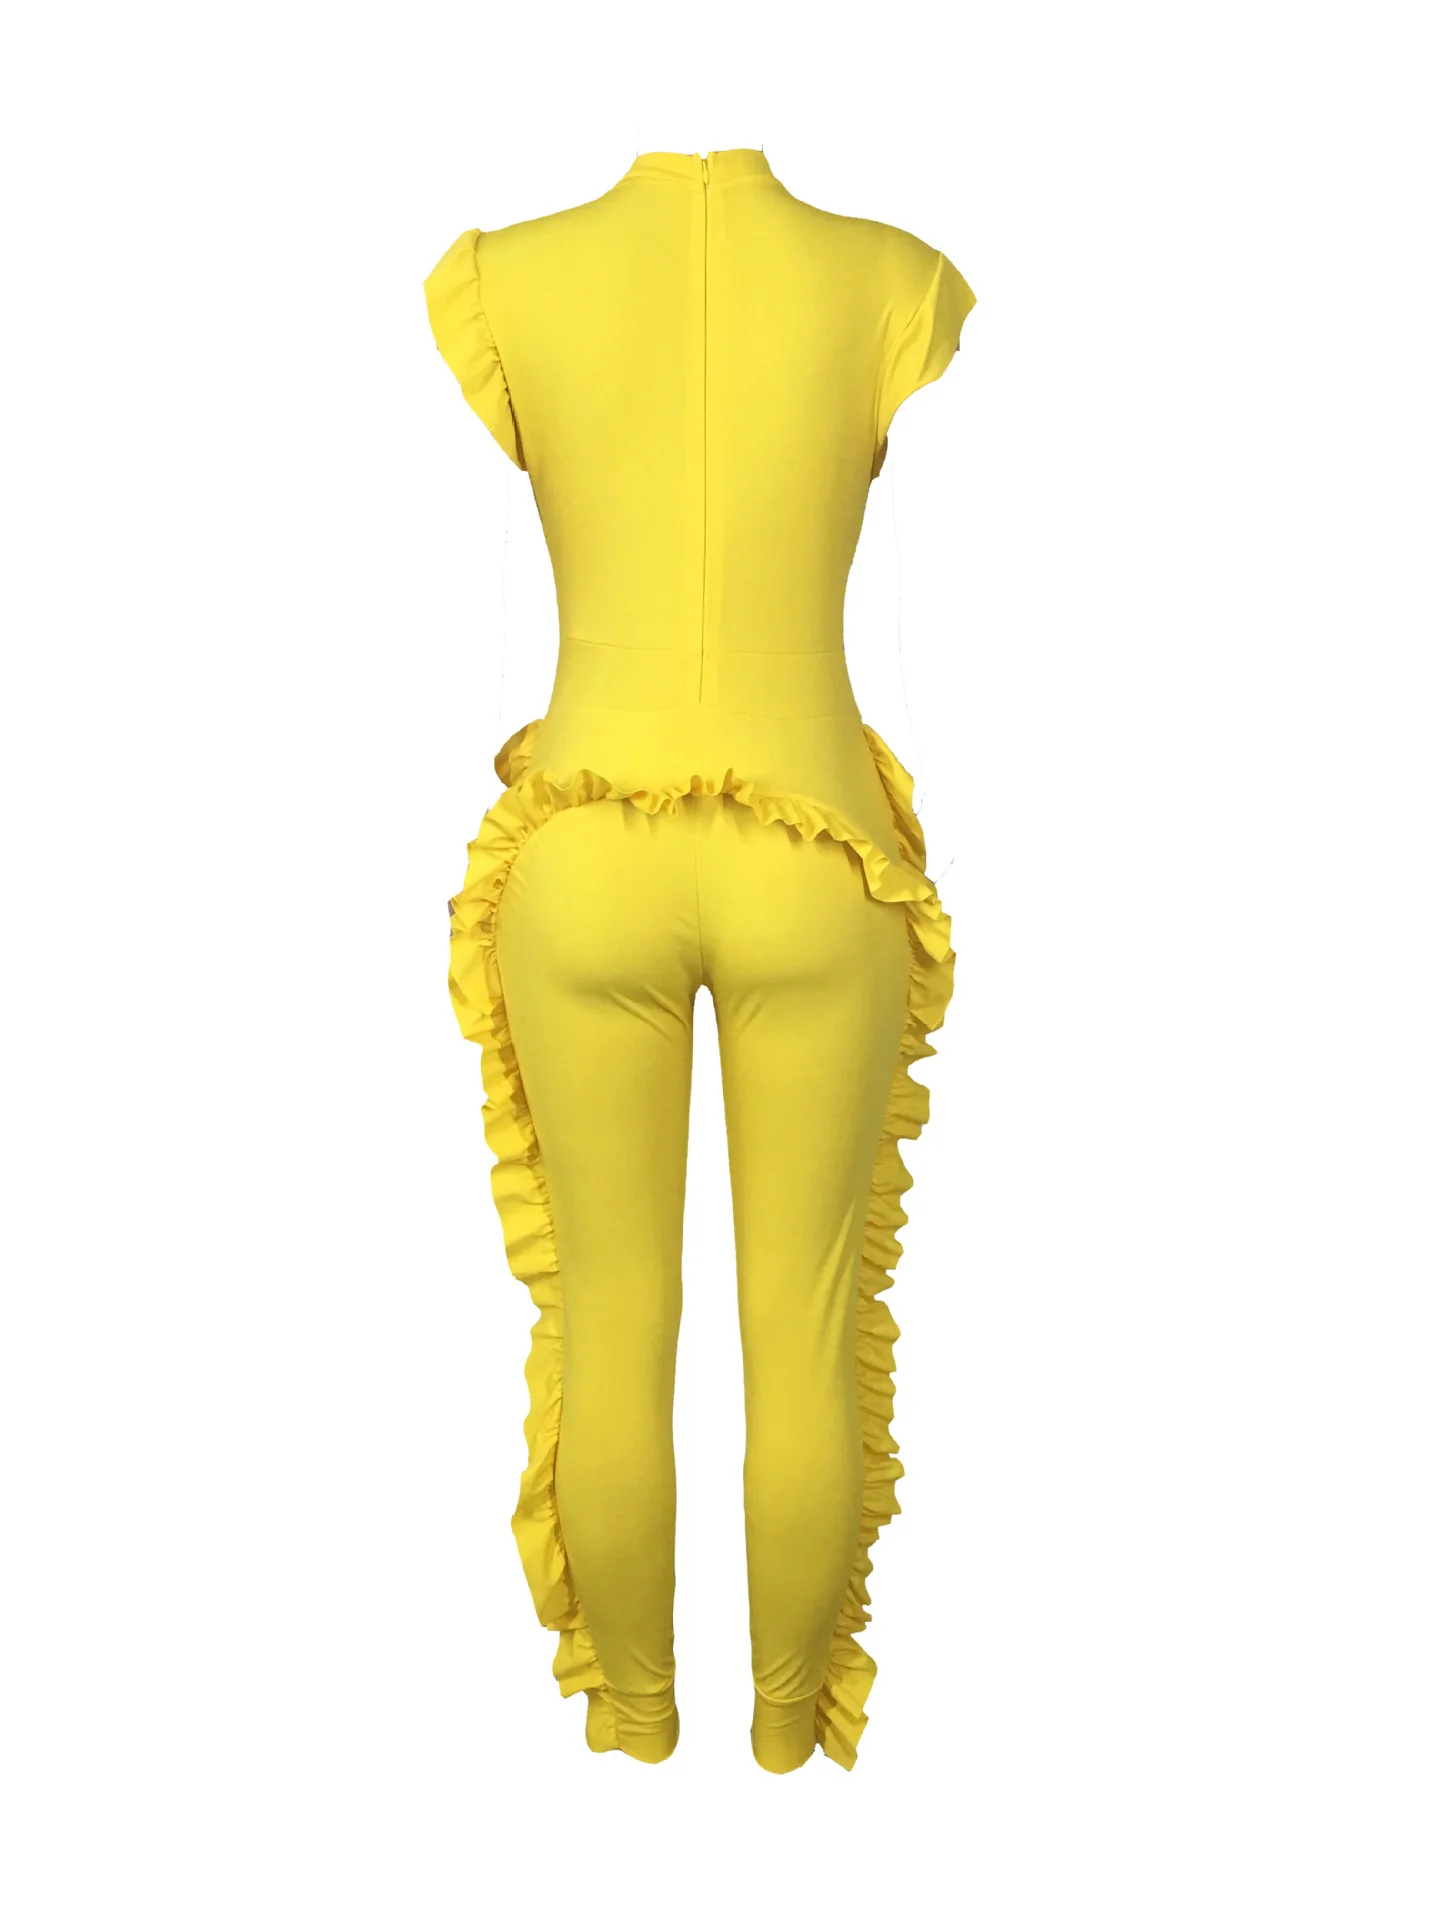 Комбинезон с оборками желтый облегающий однотонный Повседневный Модный женский эластичный комбинезон на молнии Женский Летний комбинезон размера плюс XL L